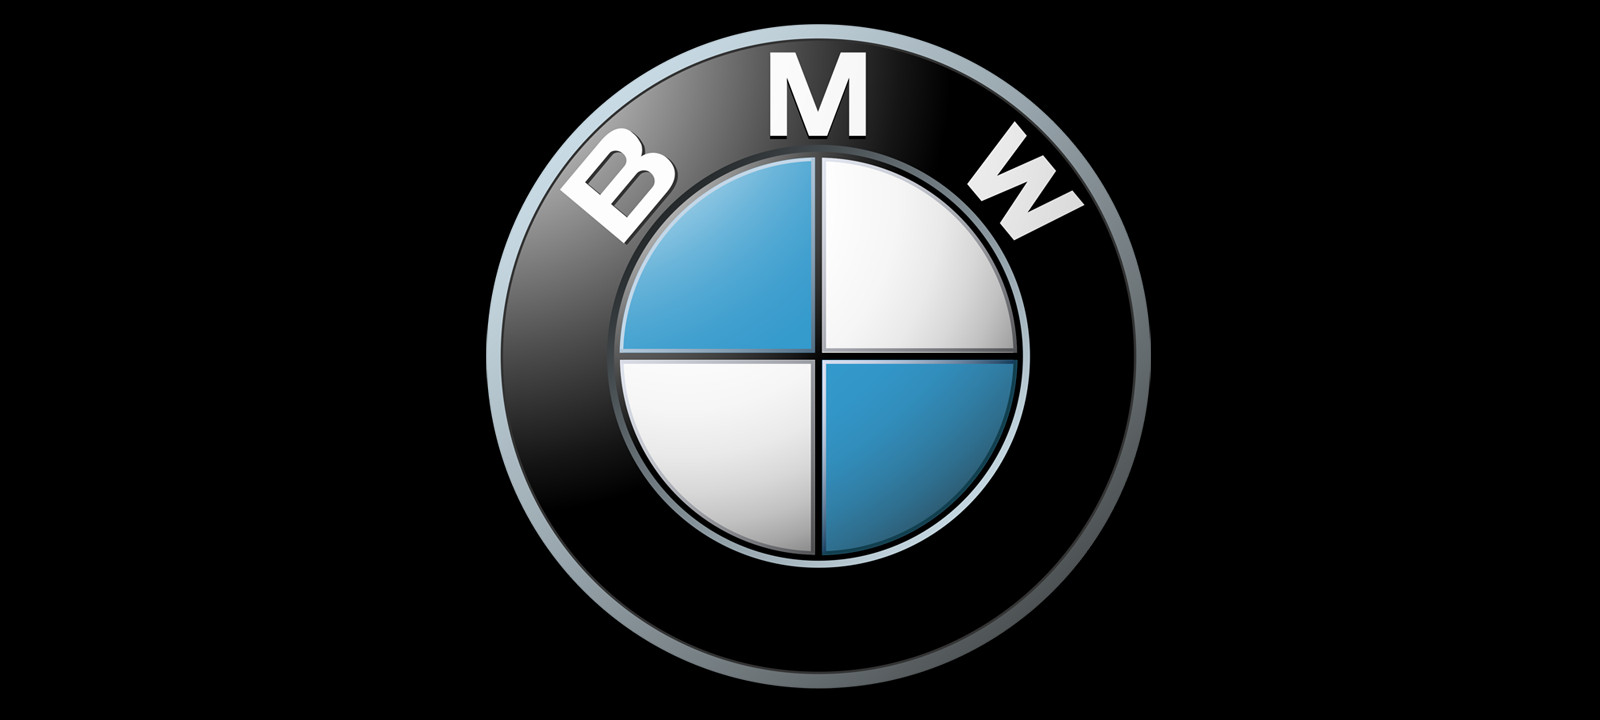 Les Quandt, la dynastie qui règne sur BMW